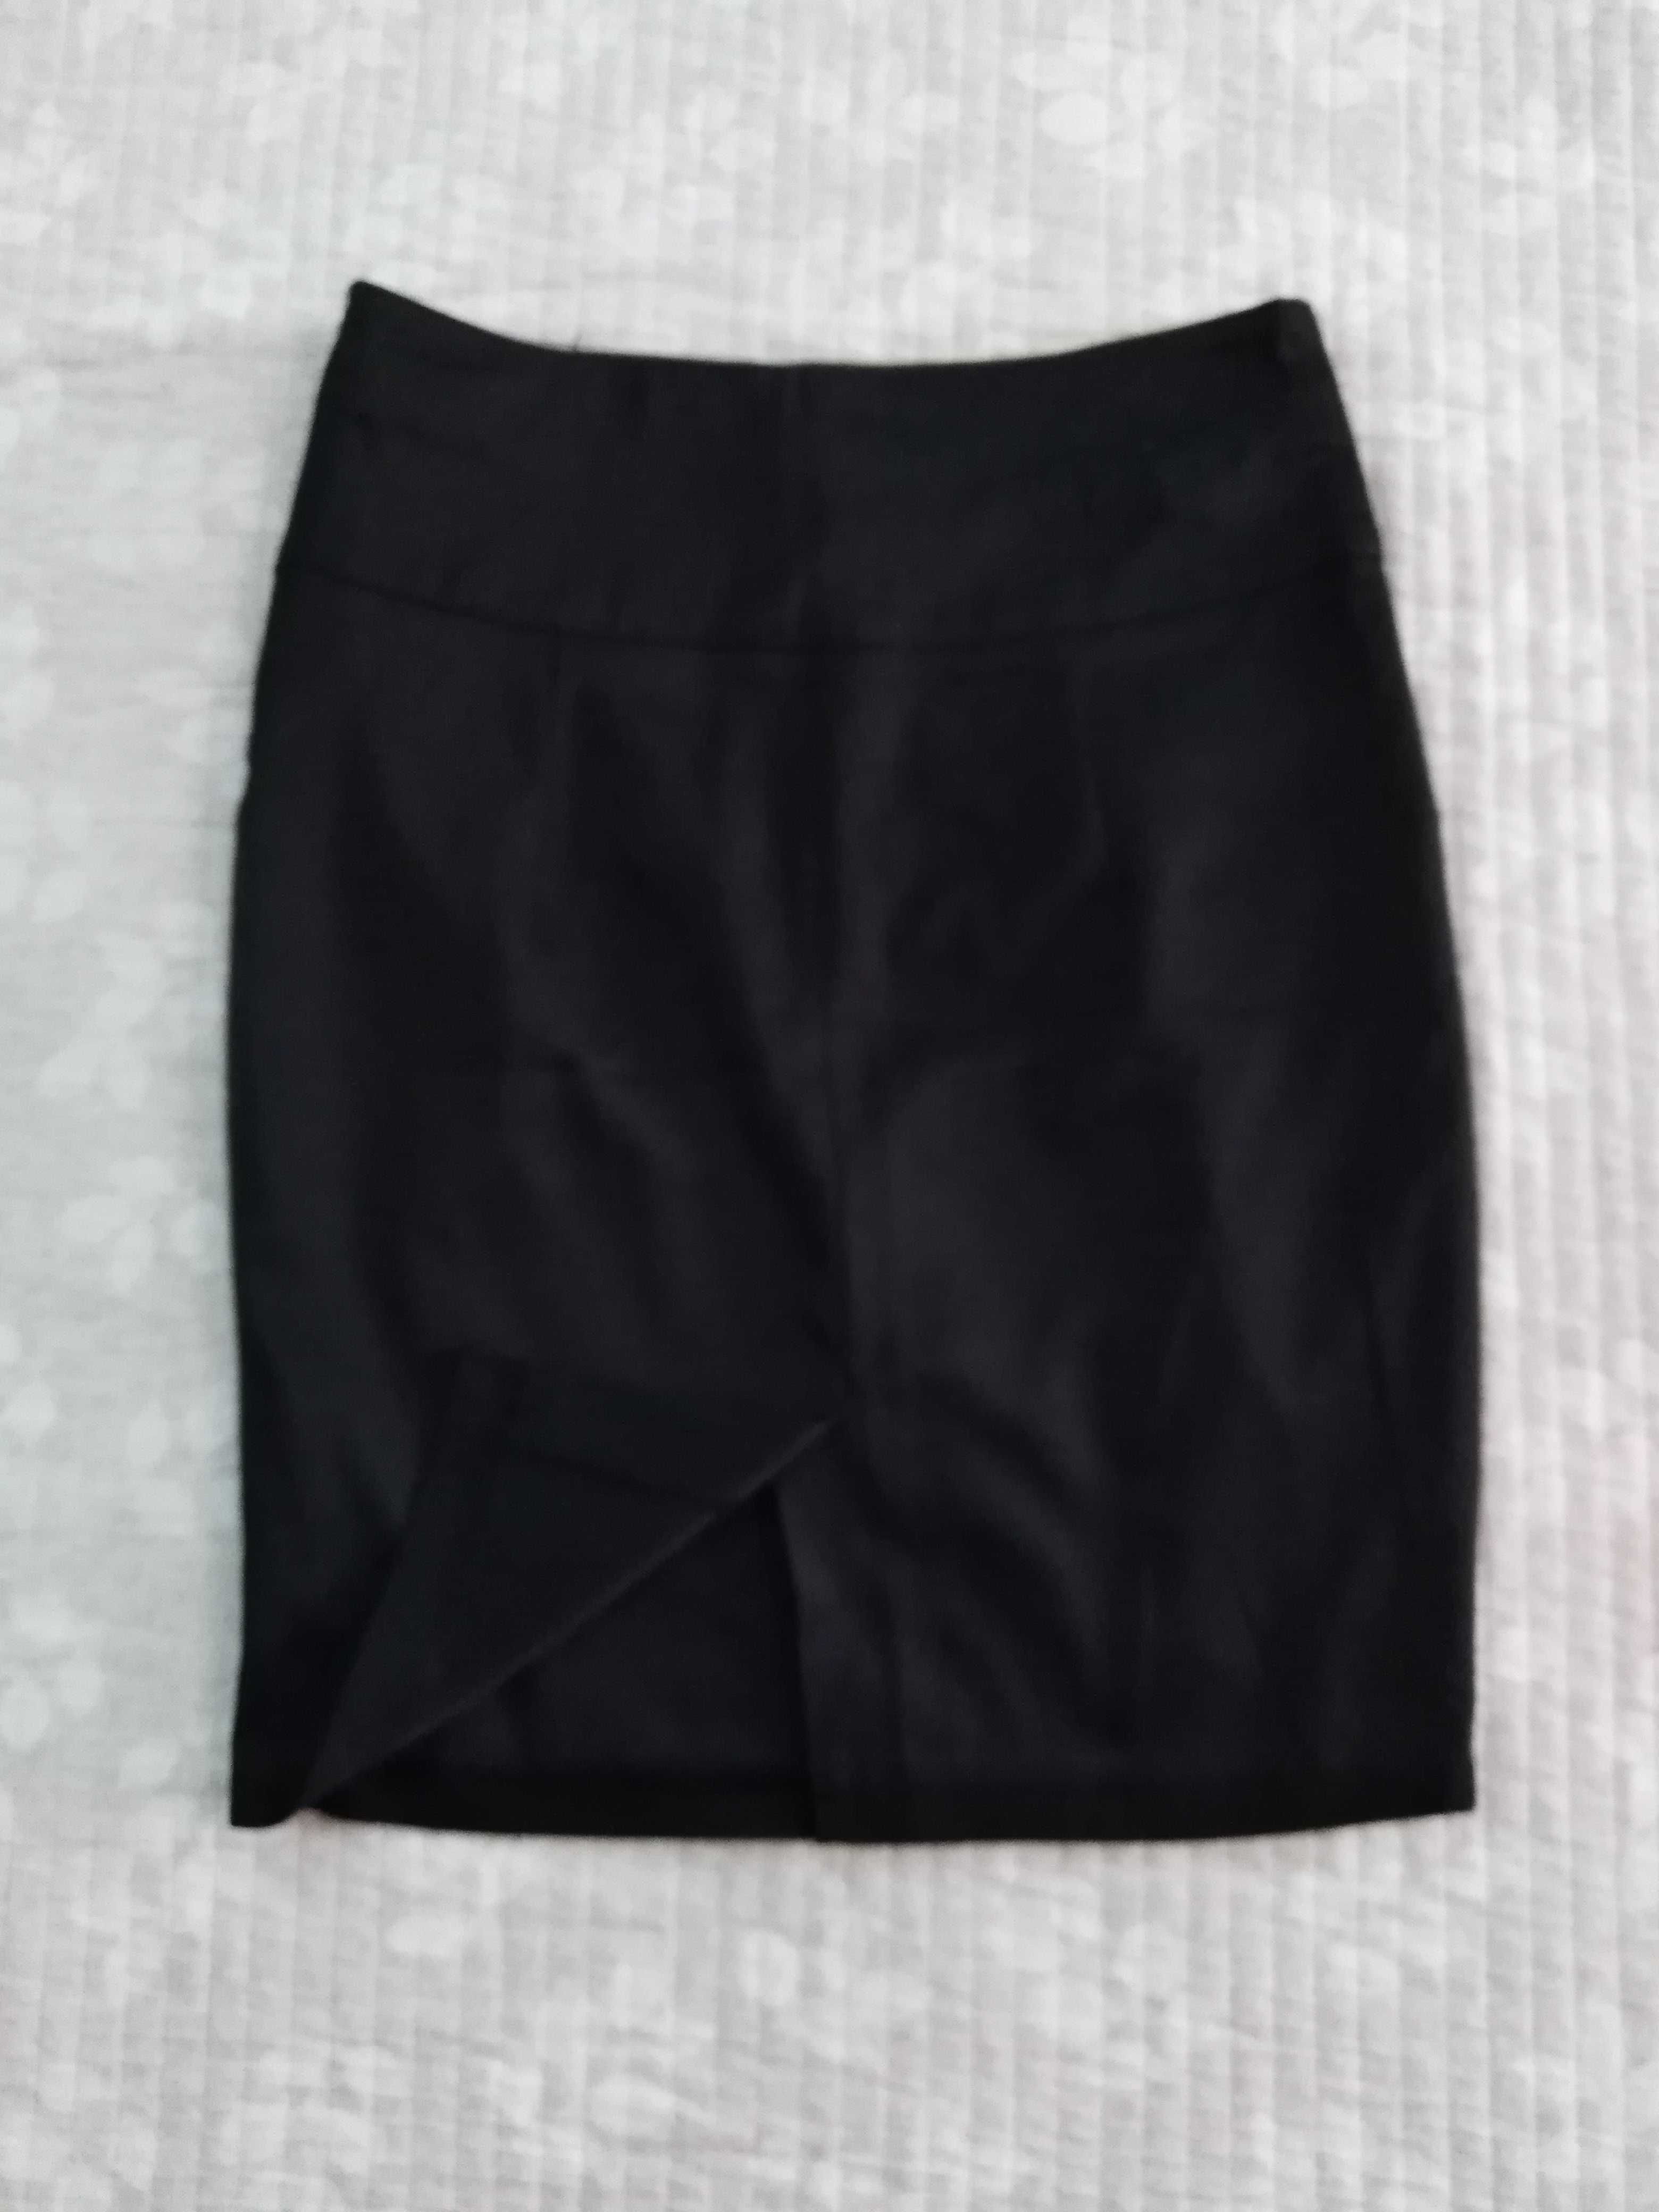 Продам школьную юбку состояние отличное, на 8-11 лет, цвет чёрный